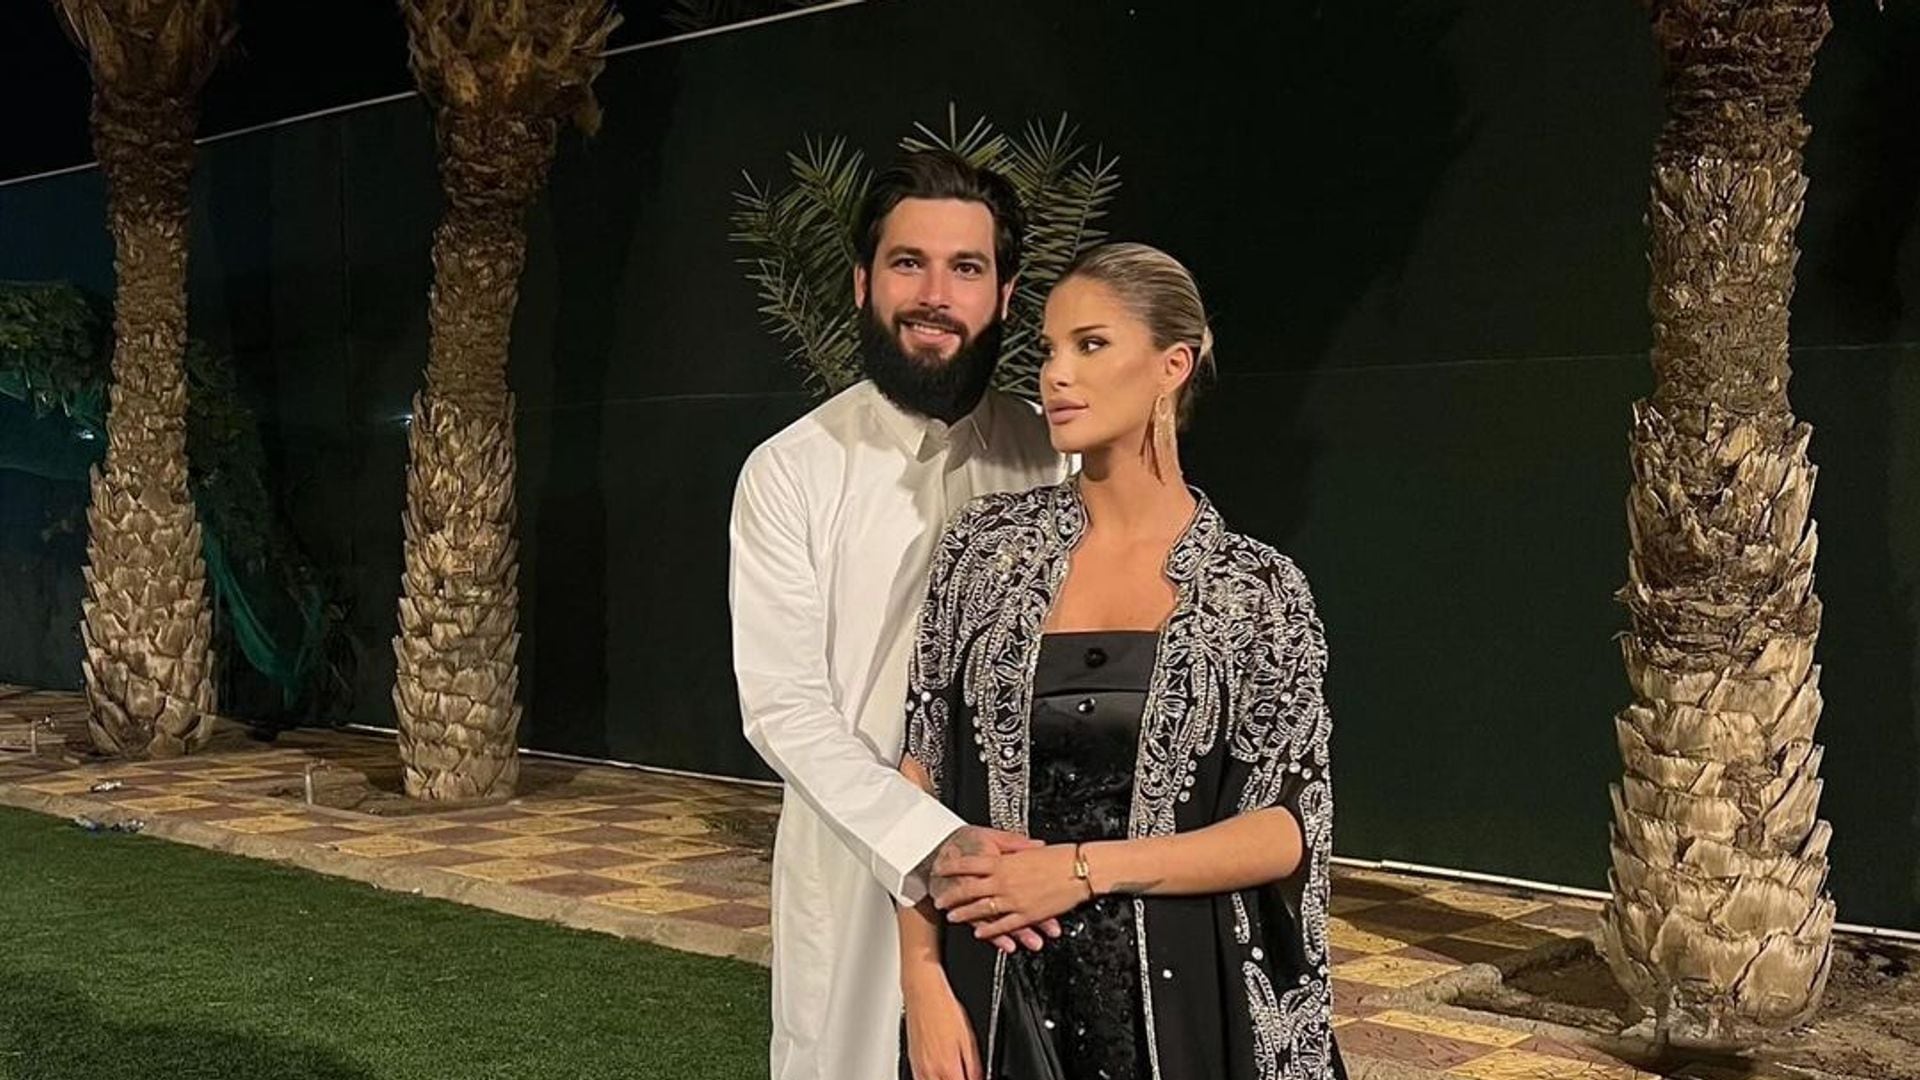 La boda sorpresa de Jota Peleteiro en Arabia Saudí con la modelo serbia Ajla Etemovic